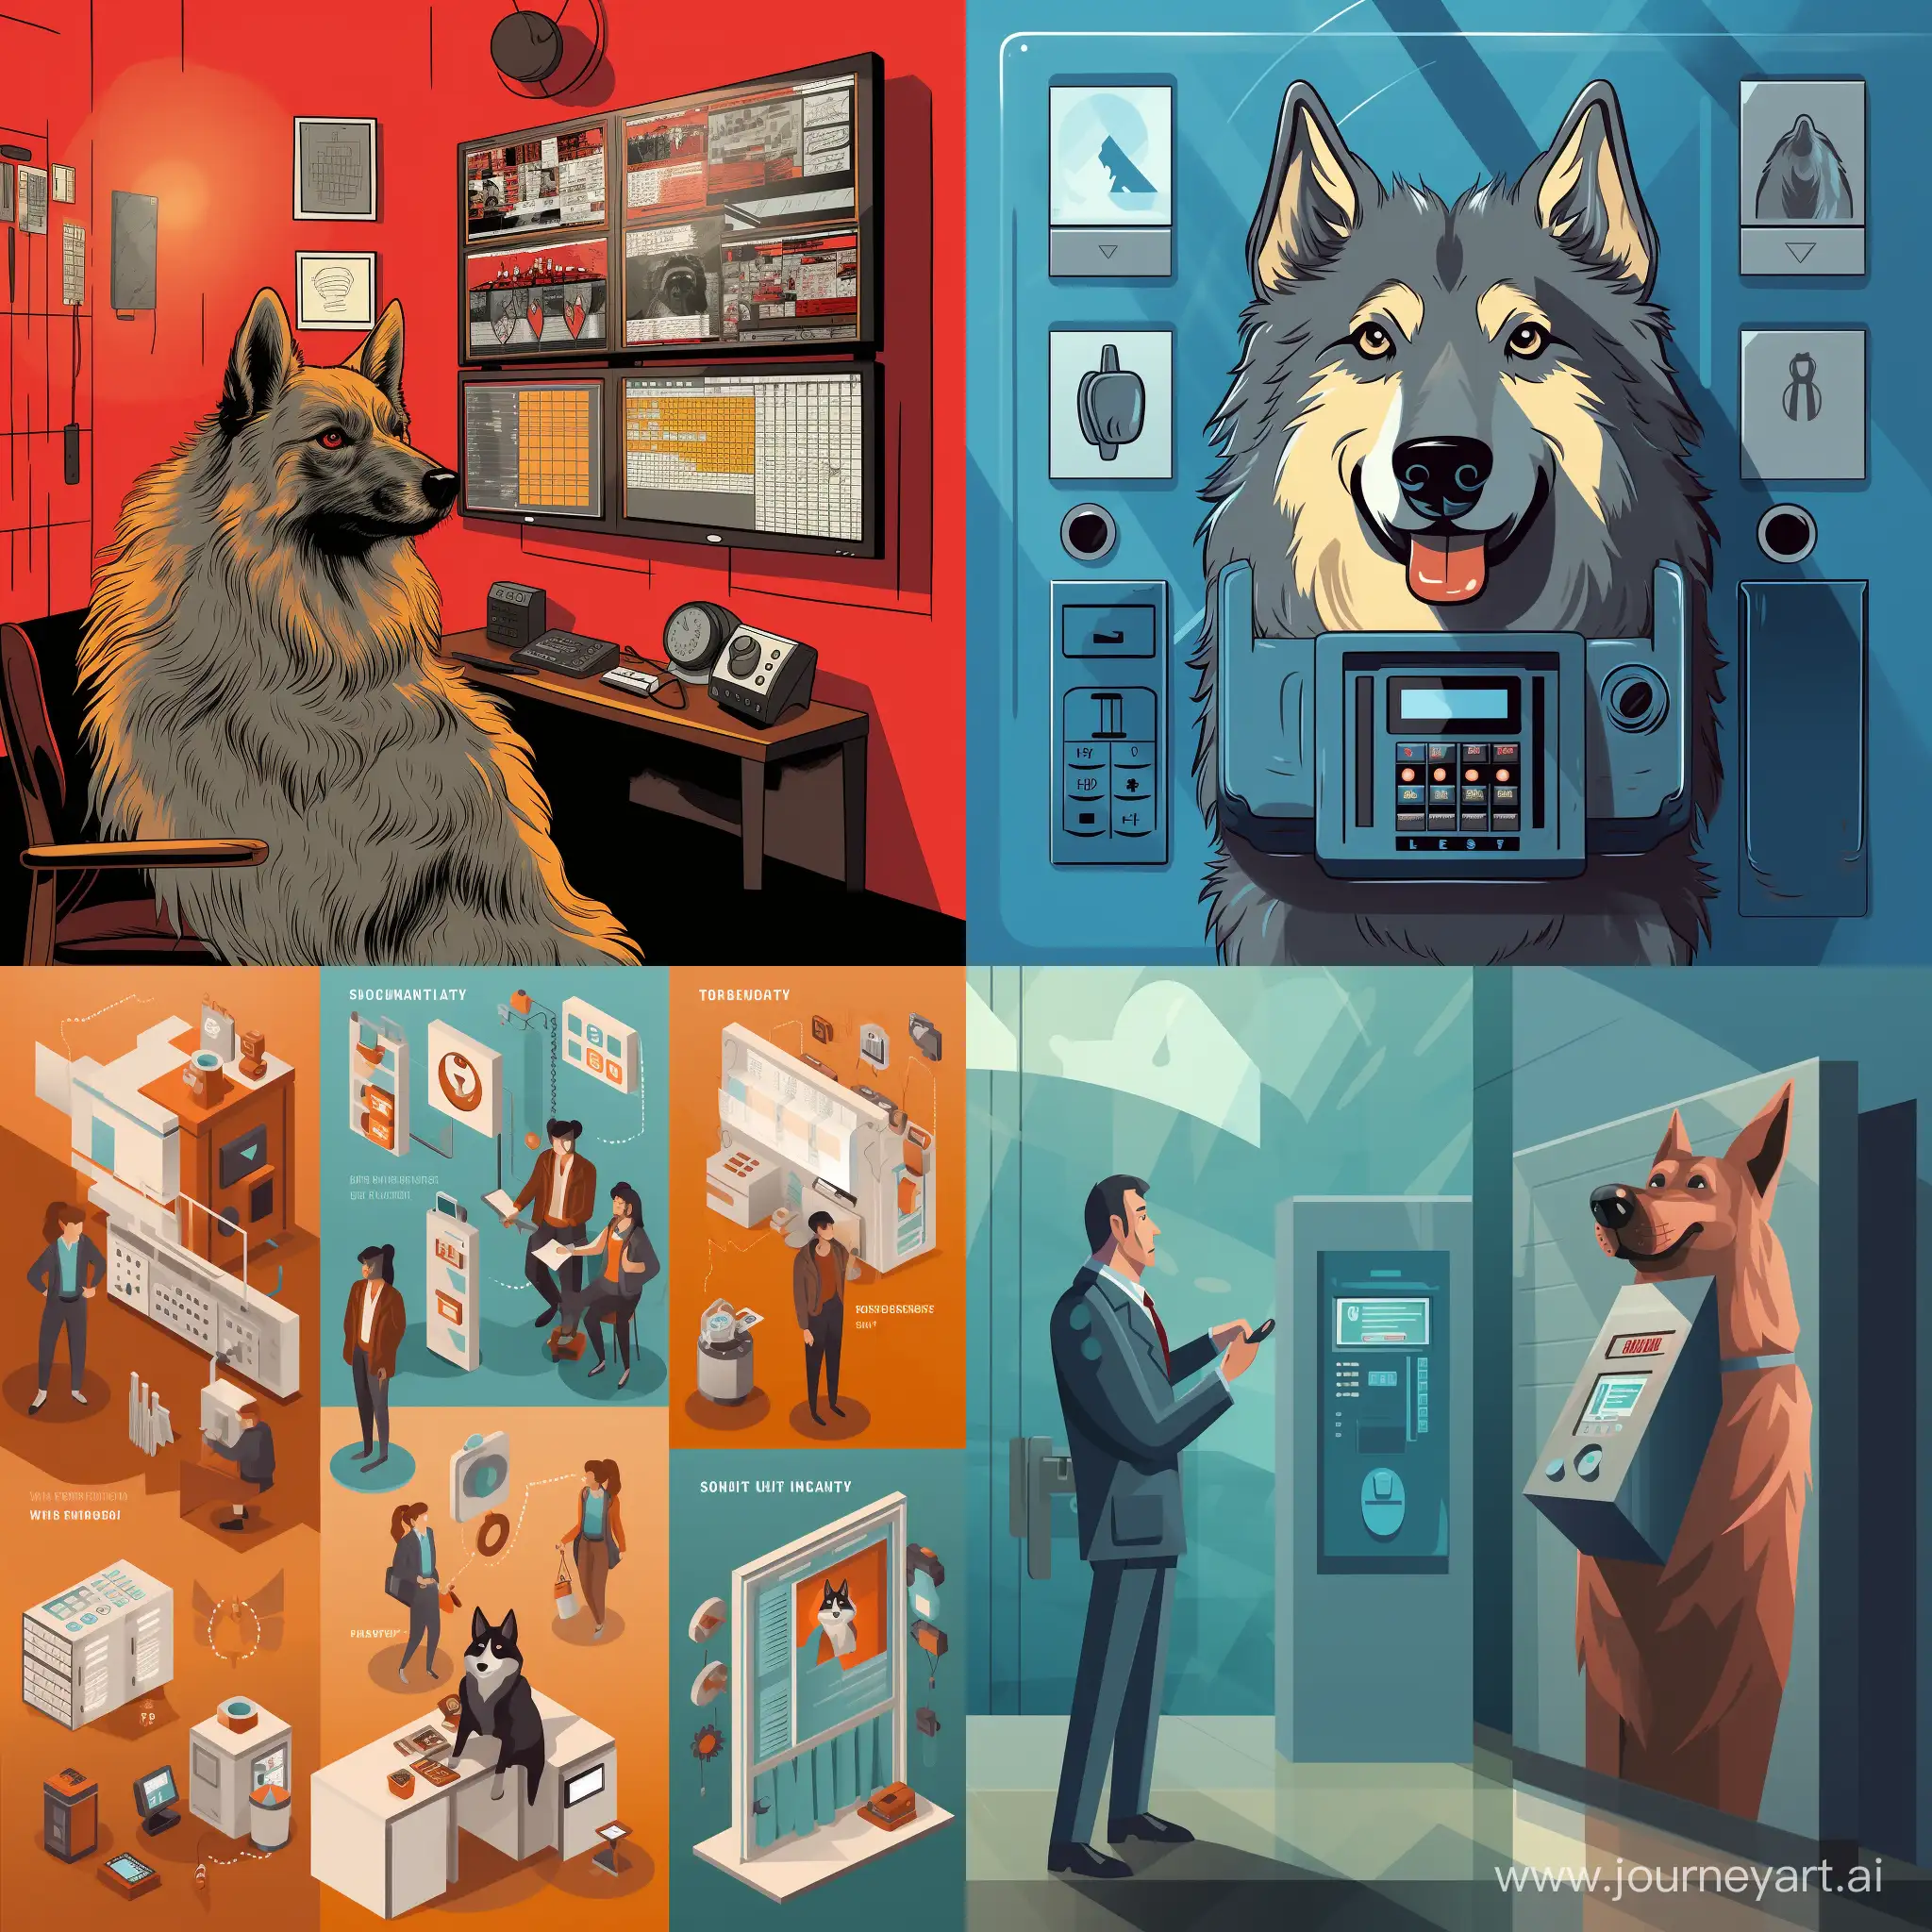 Изображения для презентации о программном обеспечении контроля доступа, которе называется Watchdog.